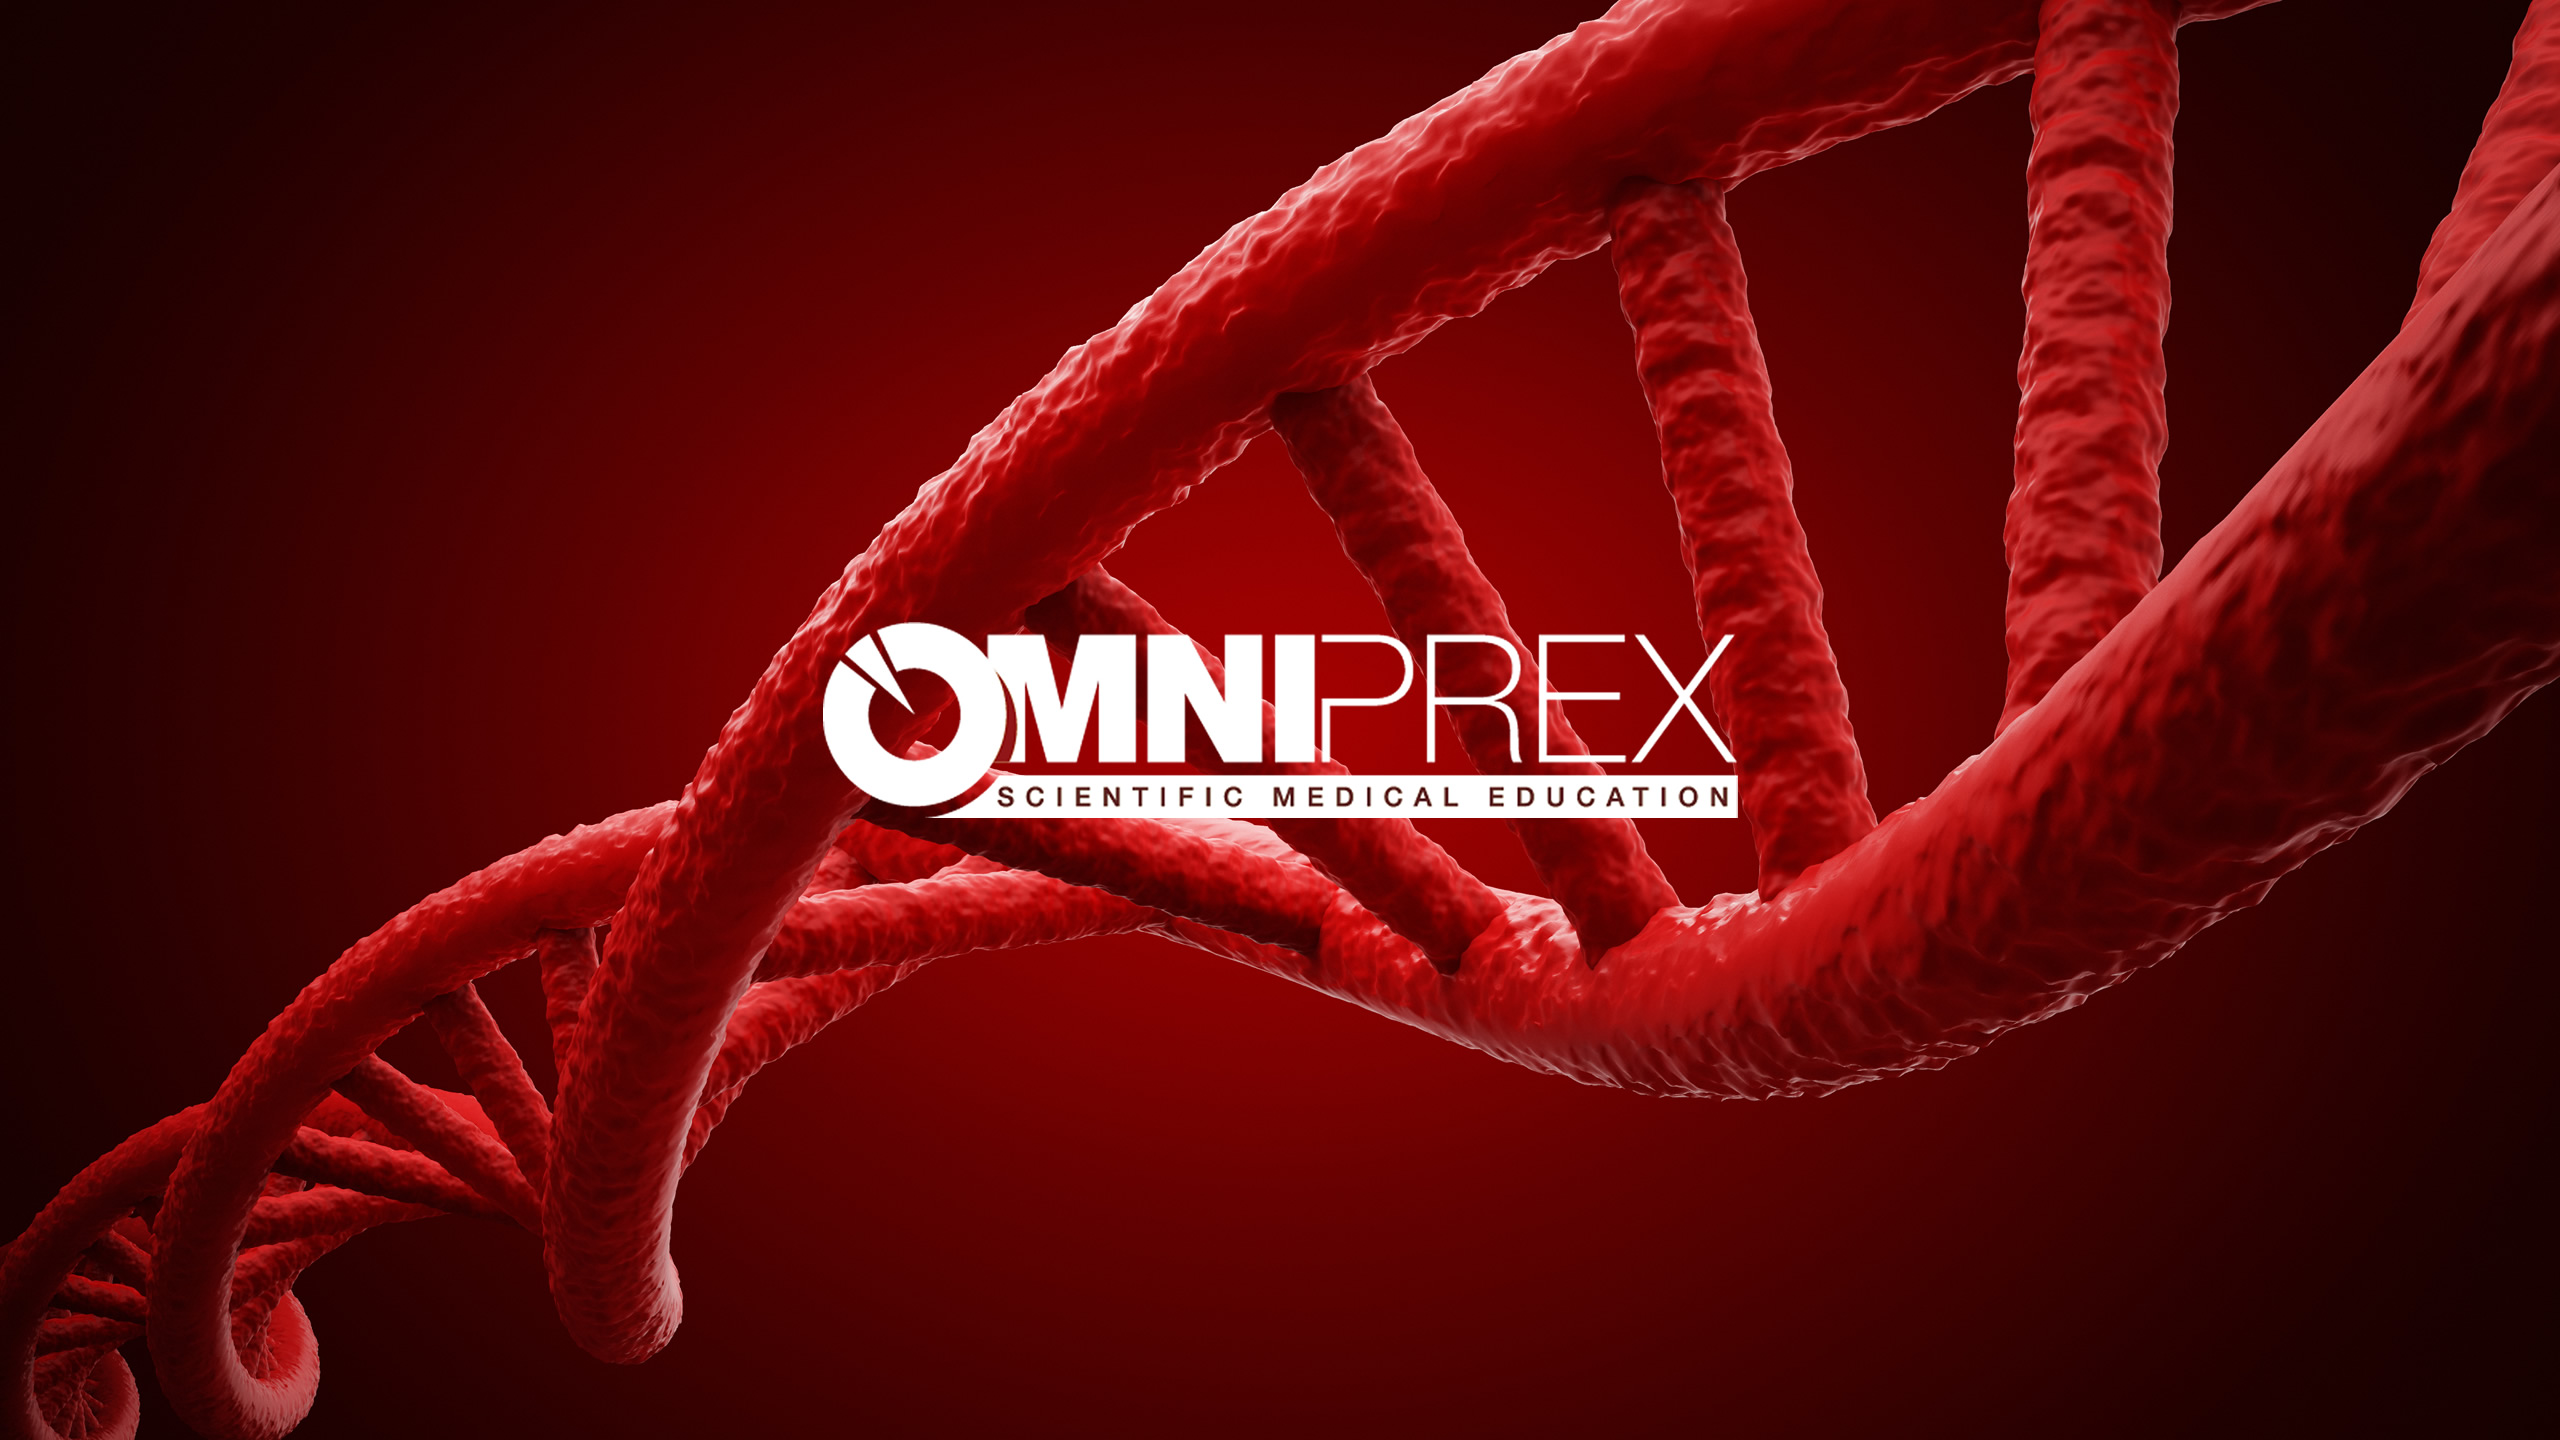 Omniprex inaugura un portal de divulgación científica en el ámbito de la educación médica...